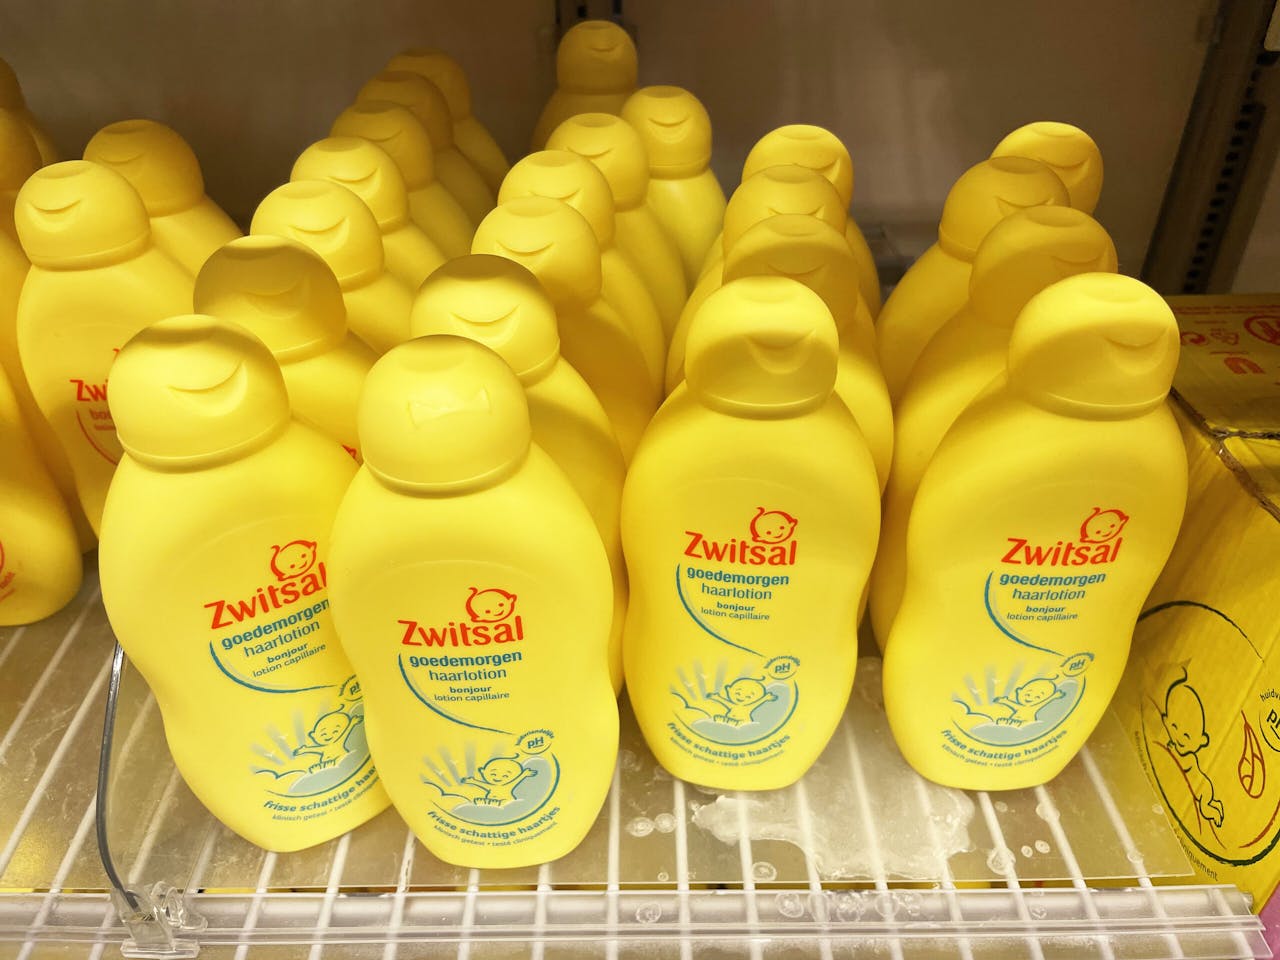 Flesjes Zwitsal-shampoo, een merk van Unilever.